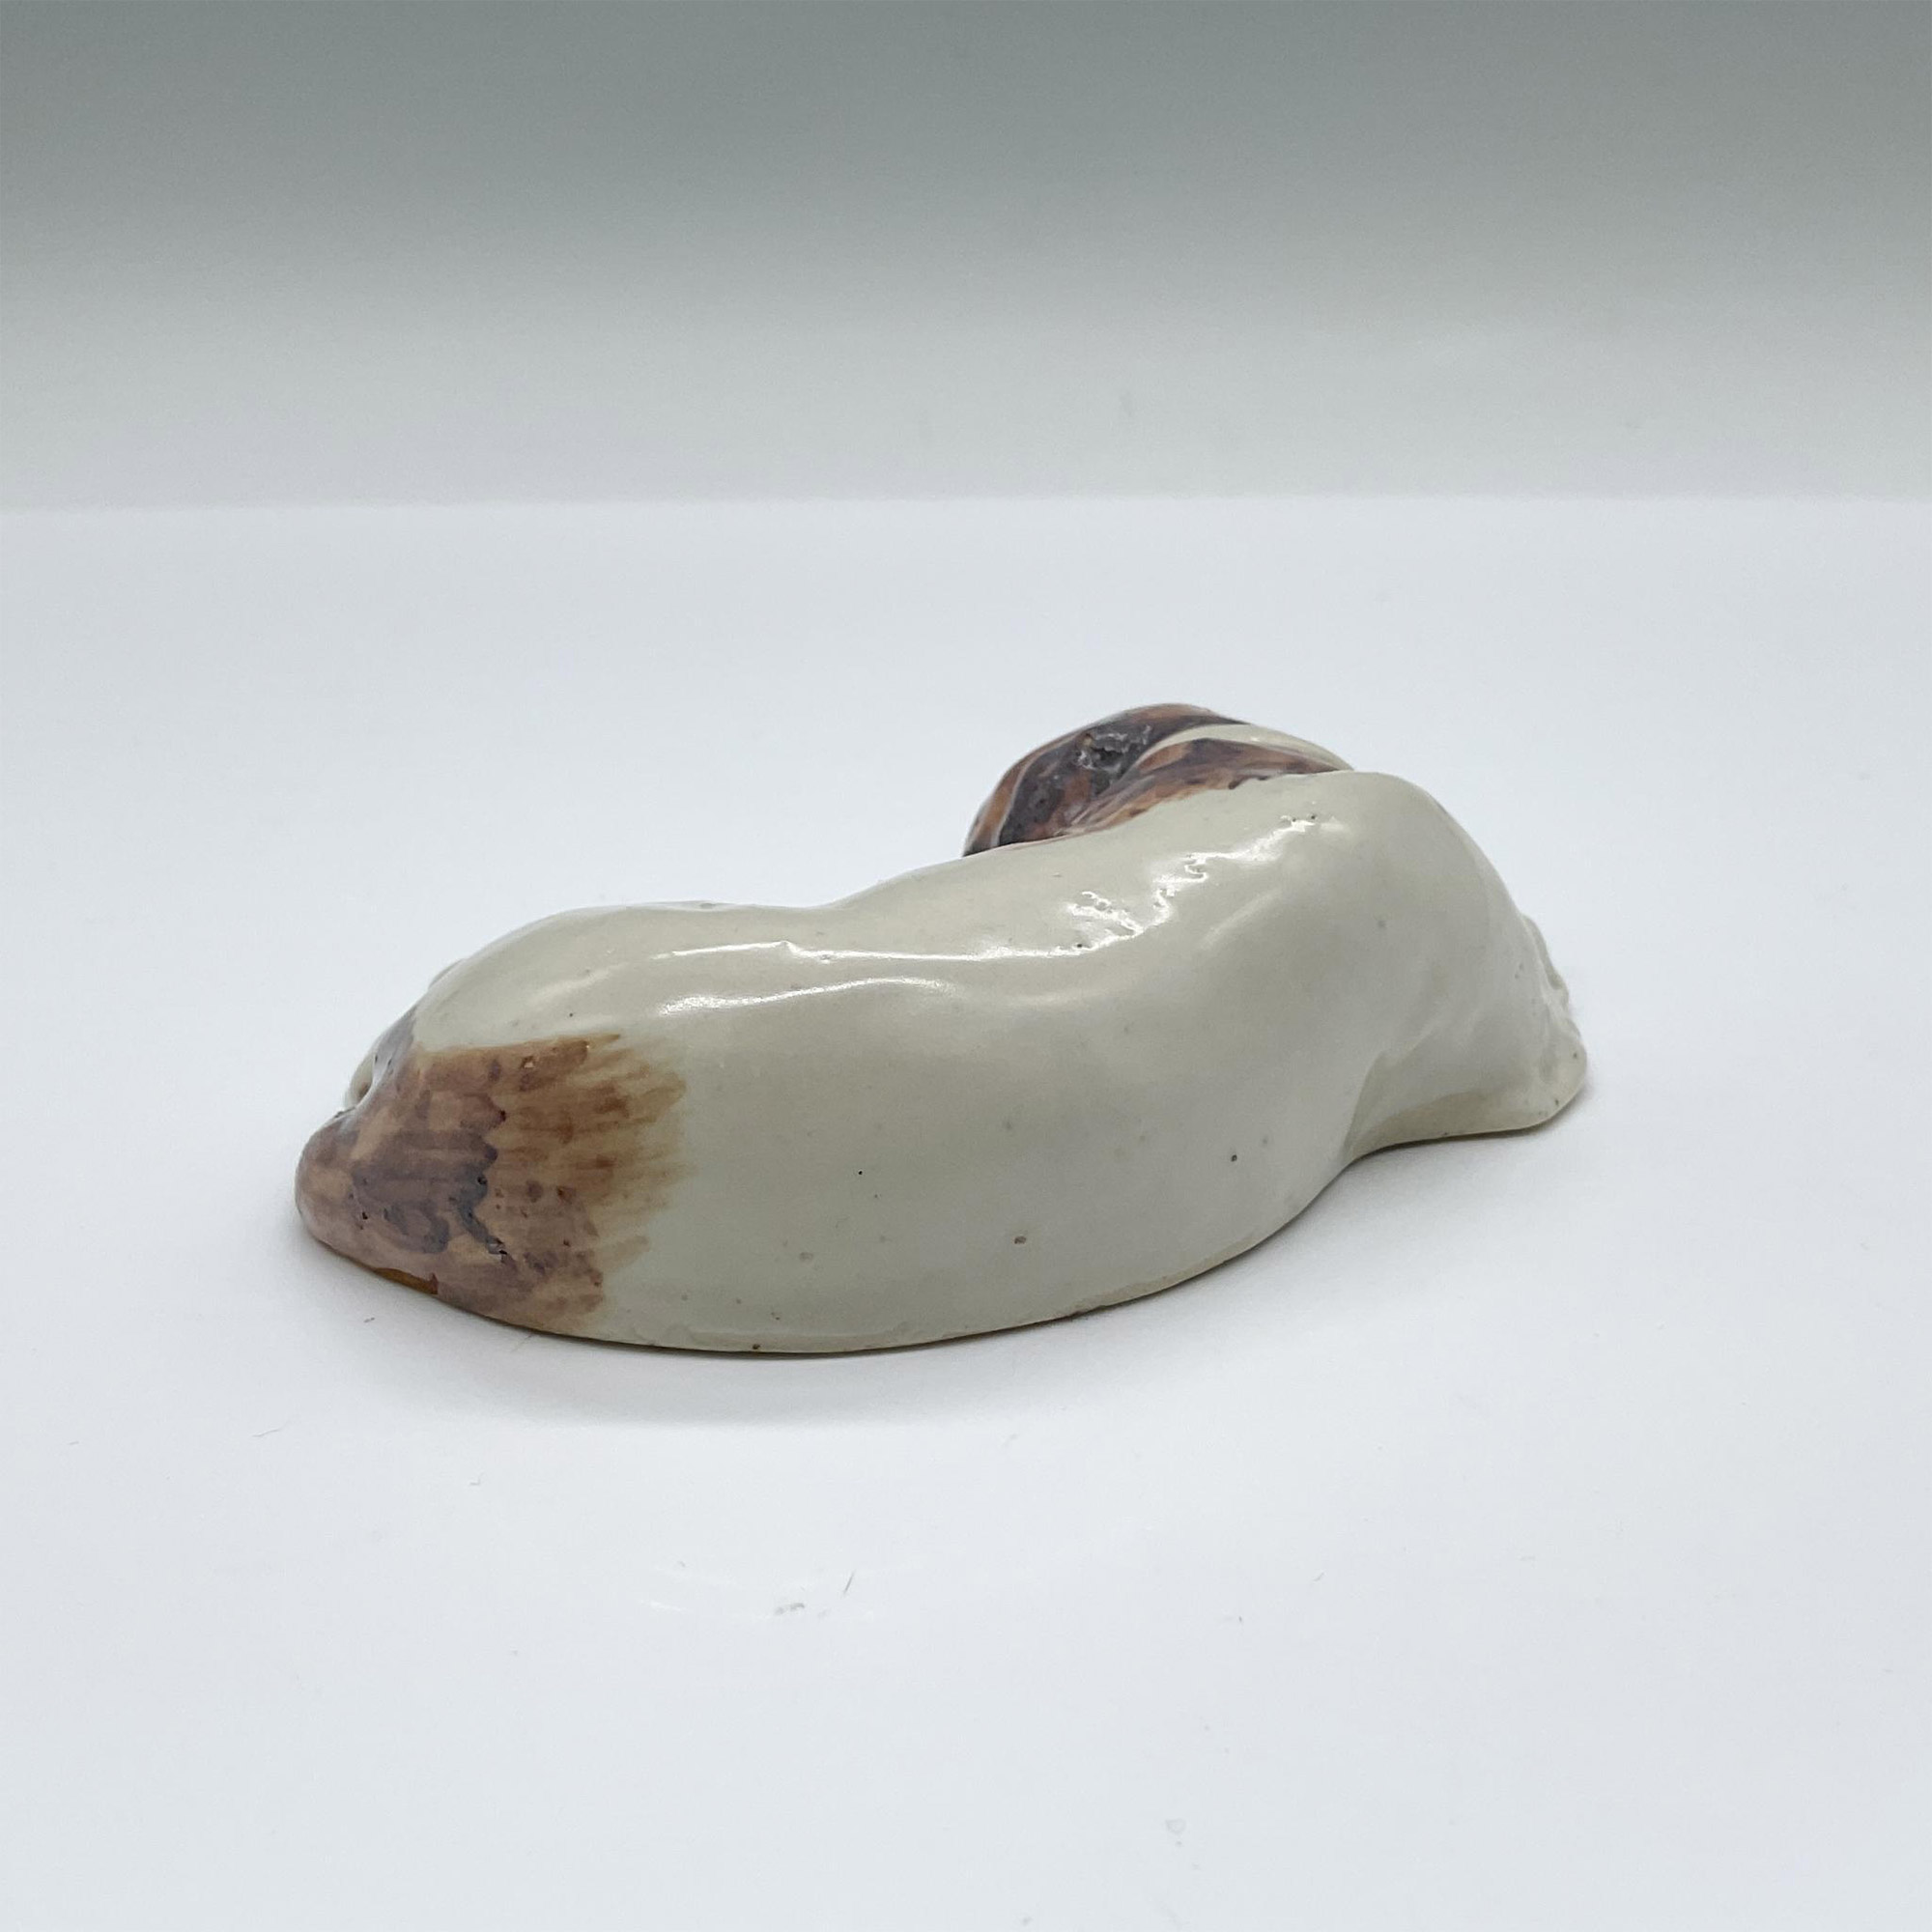 Royal Doulton Stoneware Figurine, Sleeping Dog - Image 2 of 3